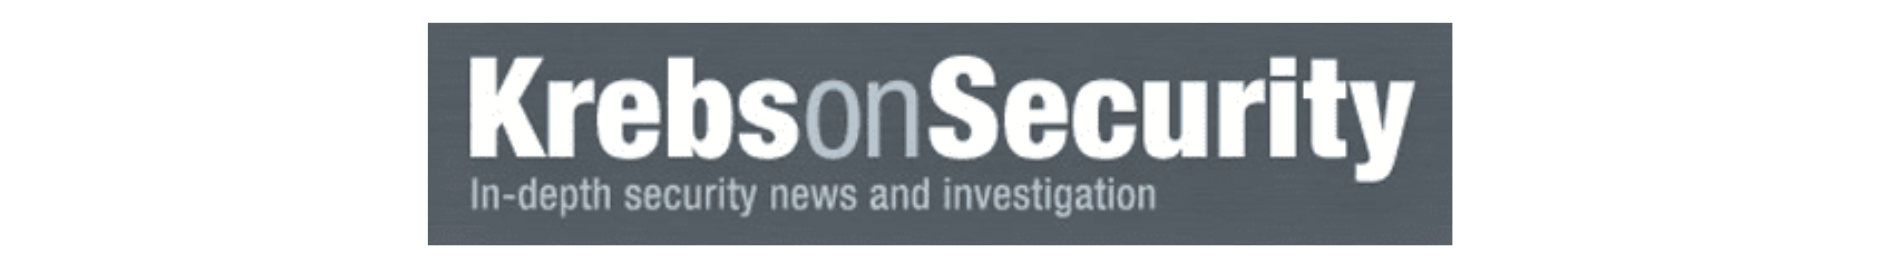 krebs-on-security-logo